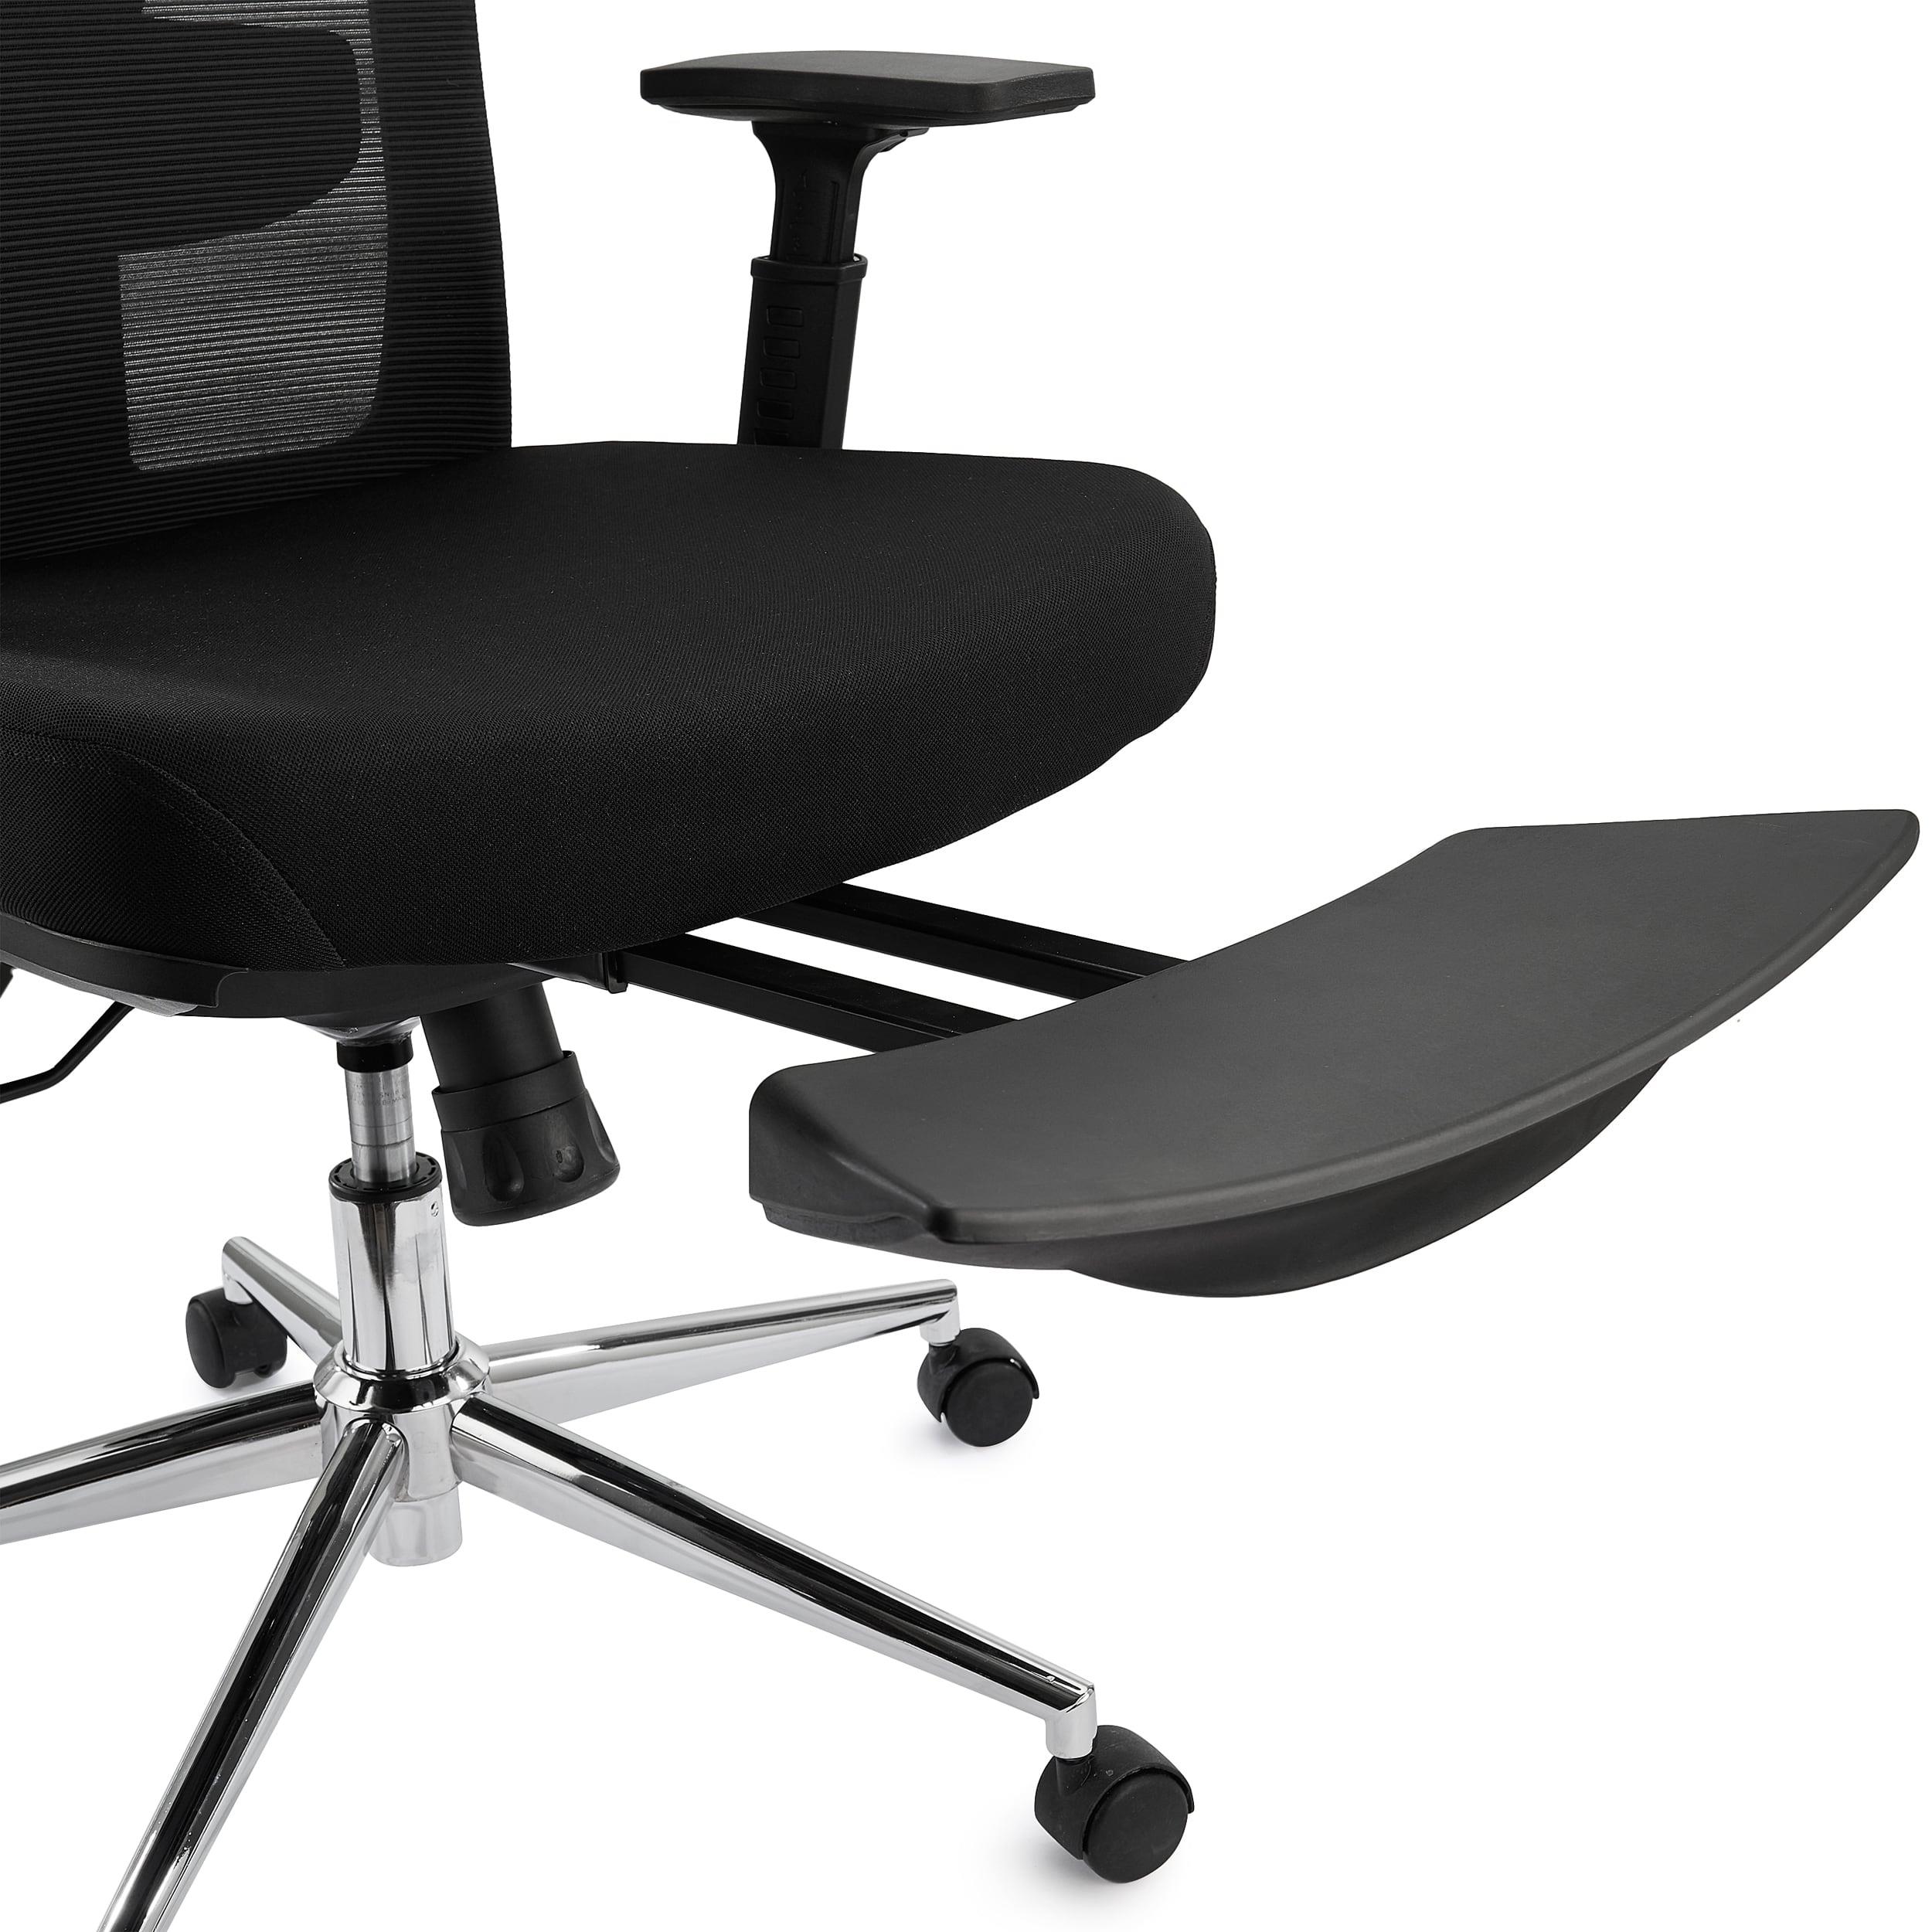  Silla de oficina con reposapiés, silla ergonómica